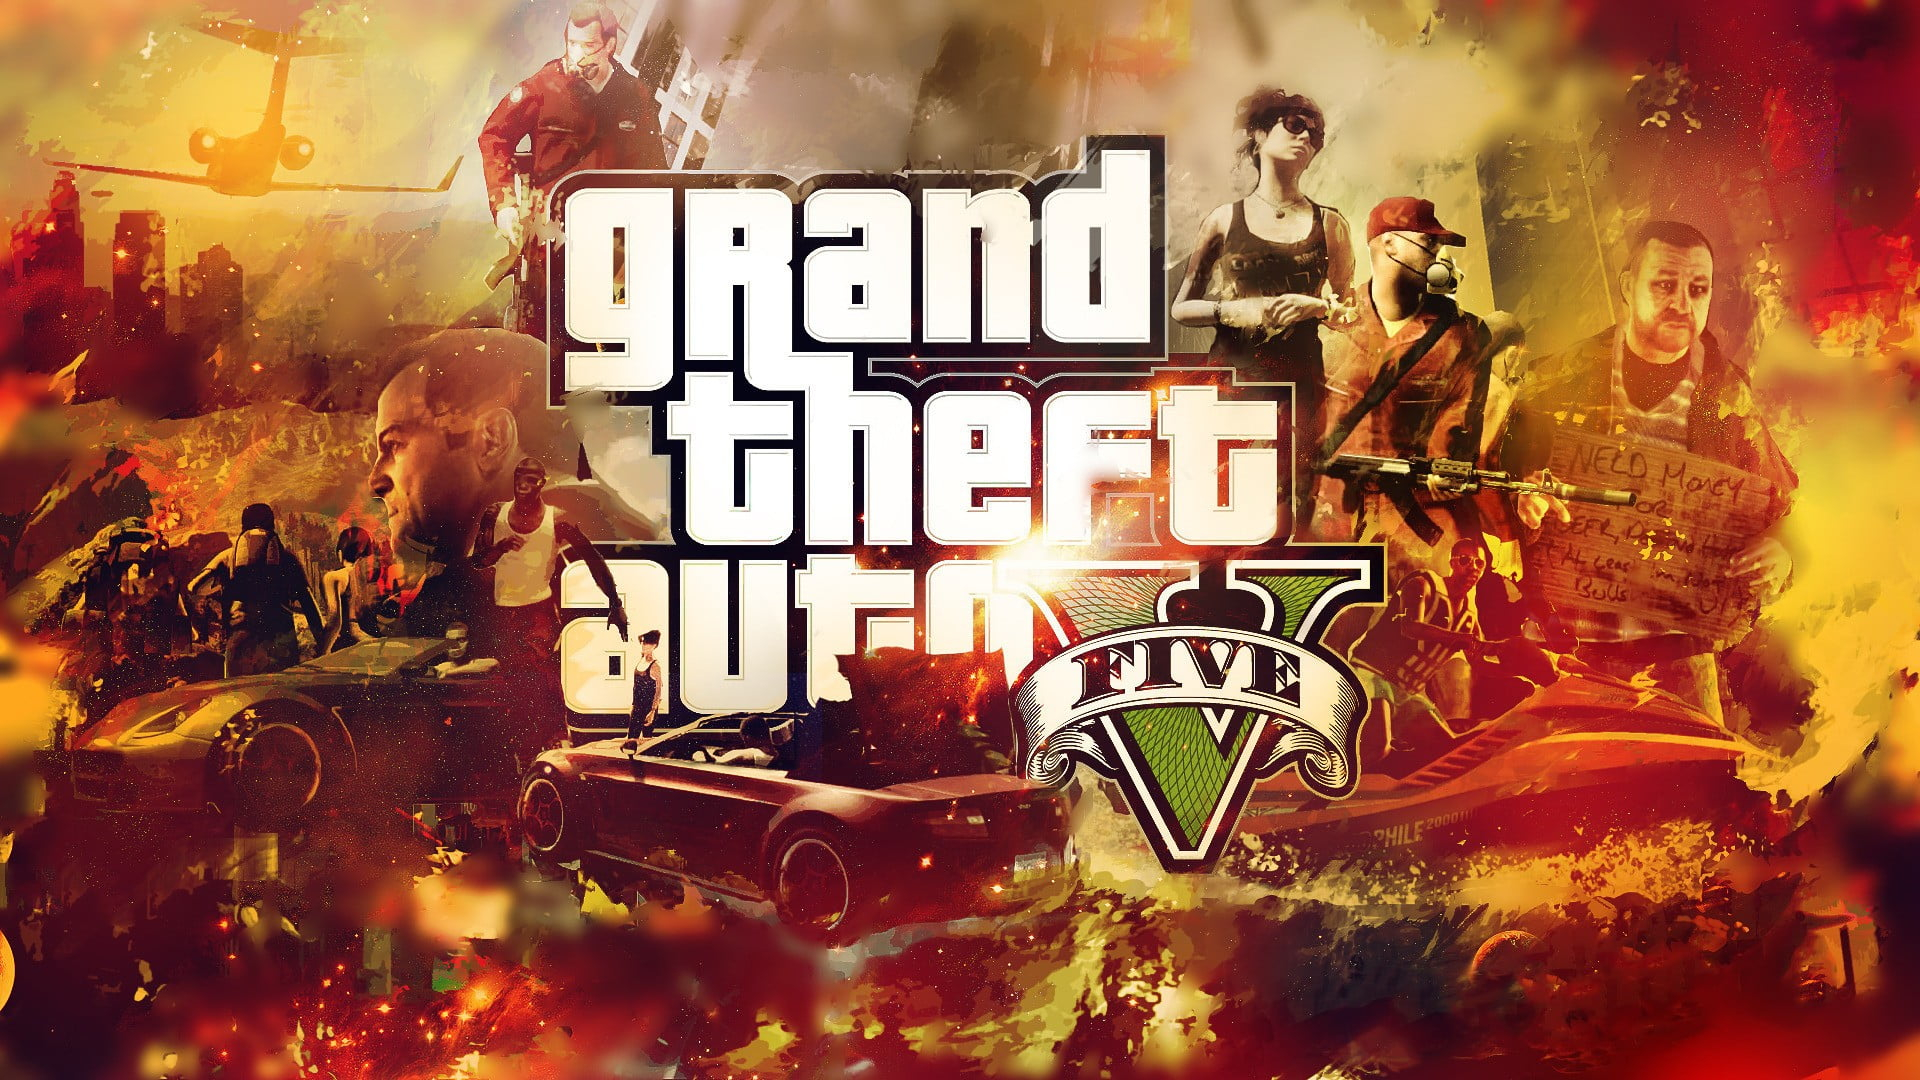 1920x1080 Grand Theft Auto Five poster, Grand Theft Auto V, Rockstar Games, video games HD wallpaper